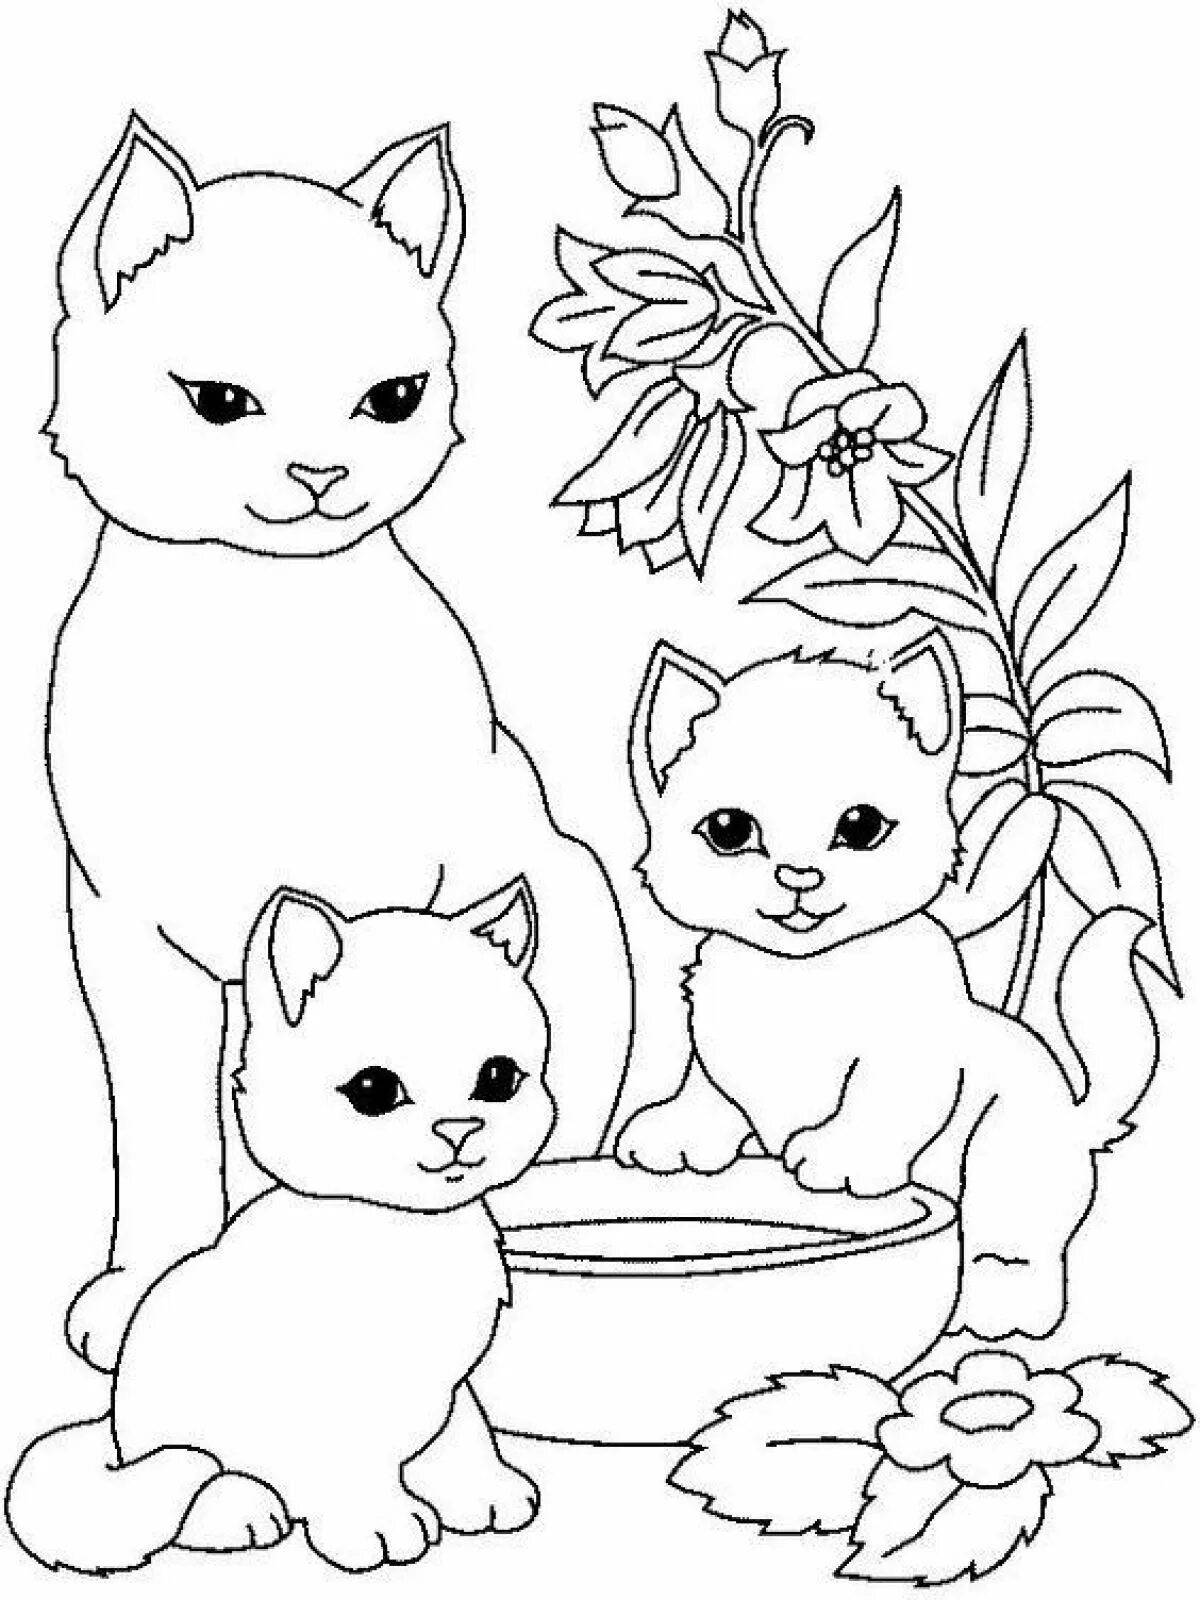 Раскраски антистресс Кошки. Сложные раскраски с кошками для взрослых.